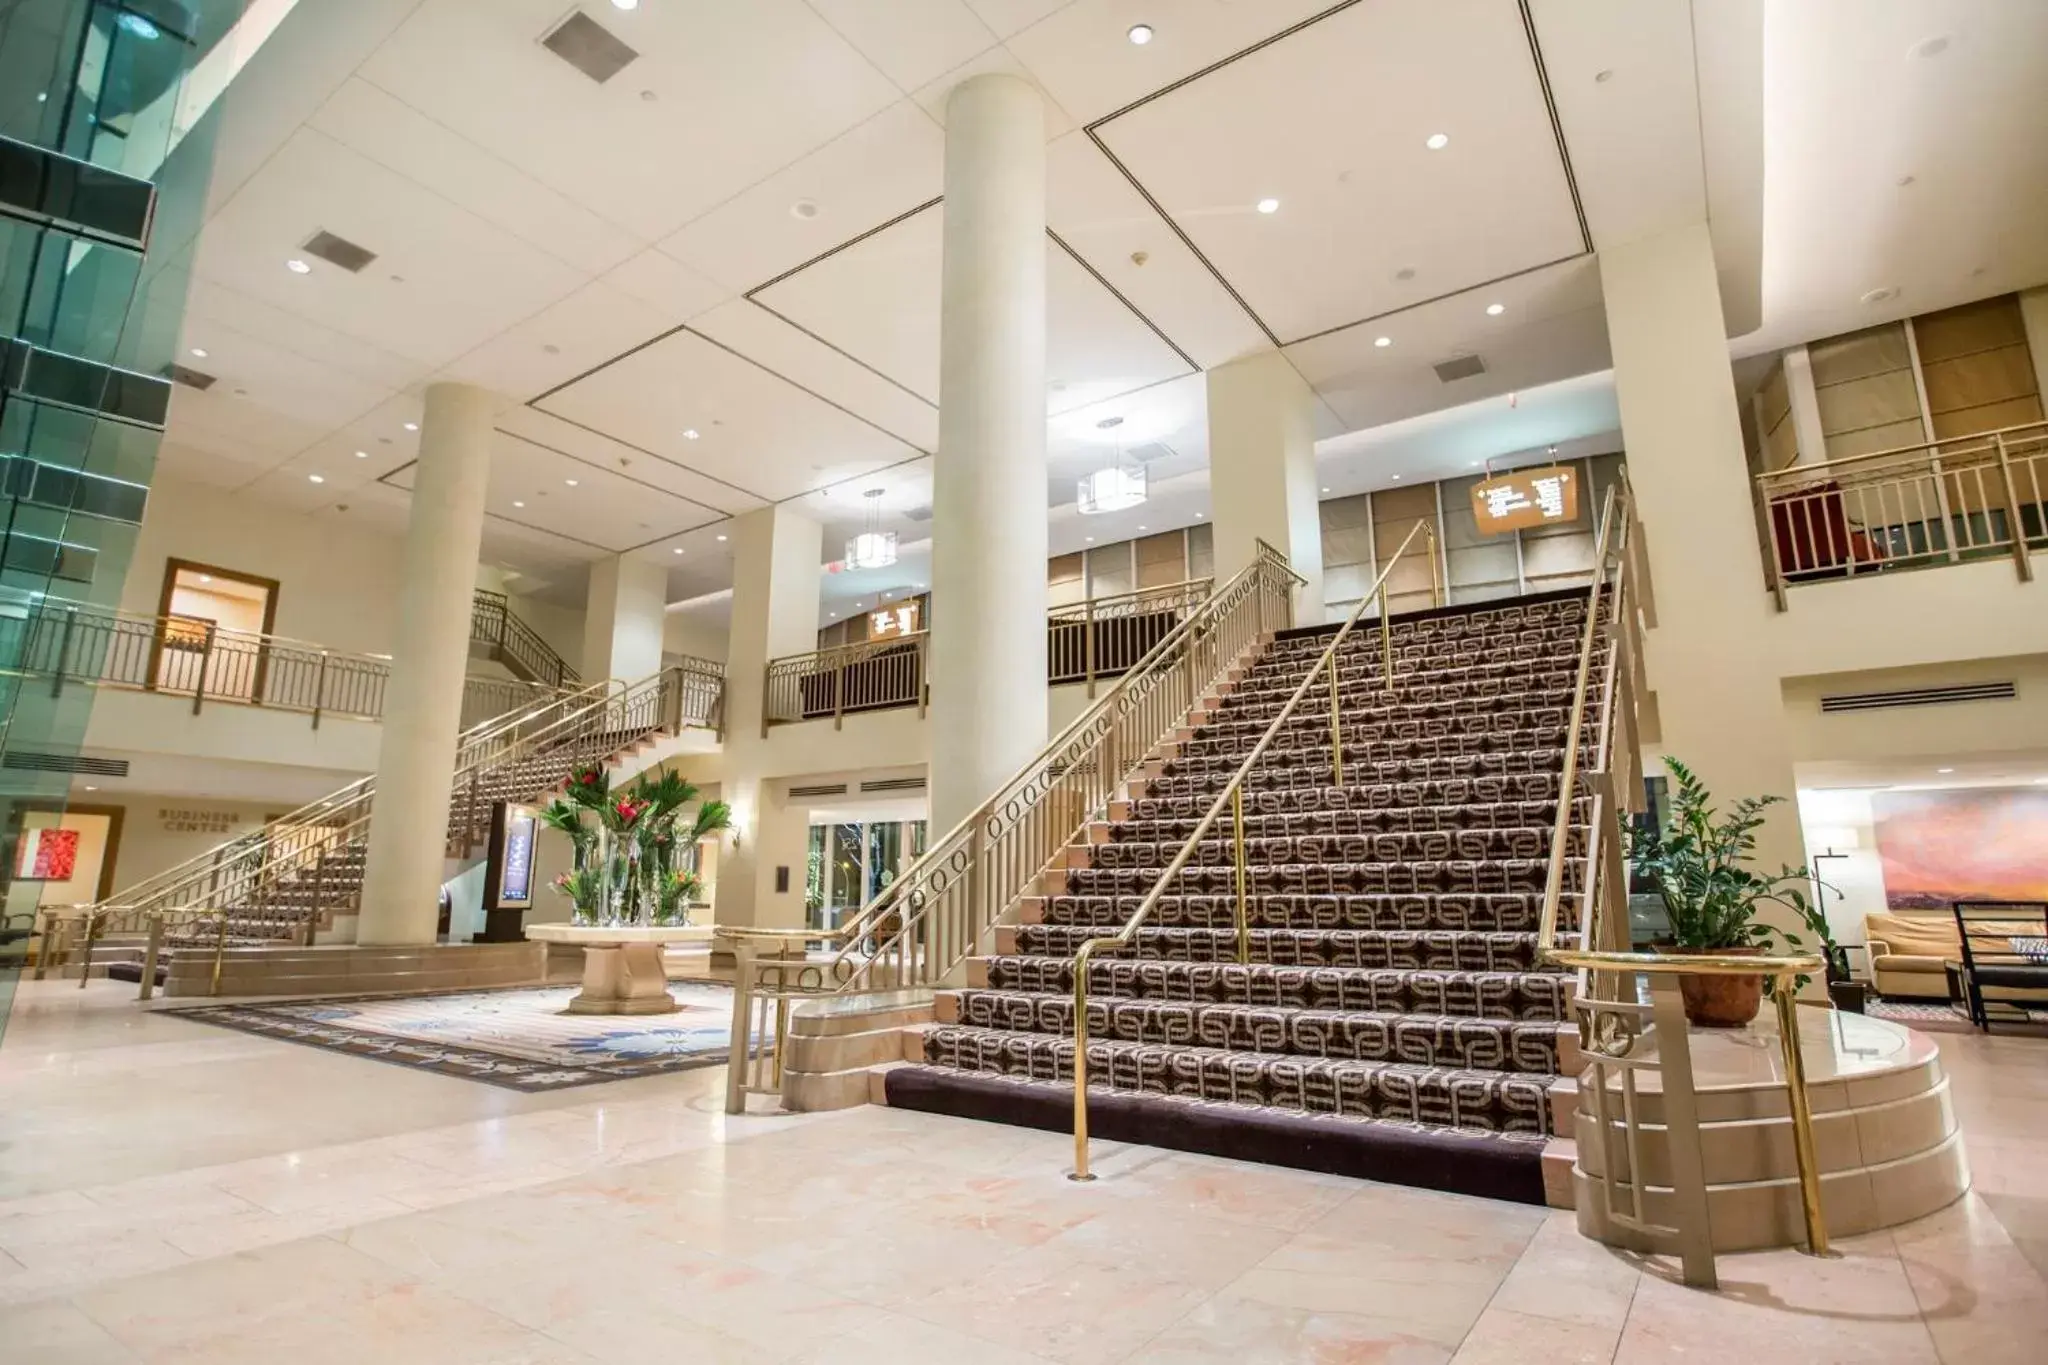 Lobby or reception in Omni Los Angeles Hotel